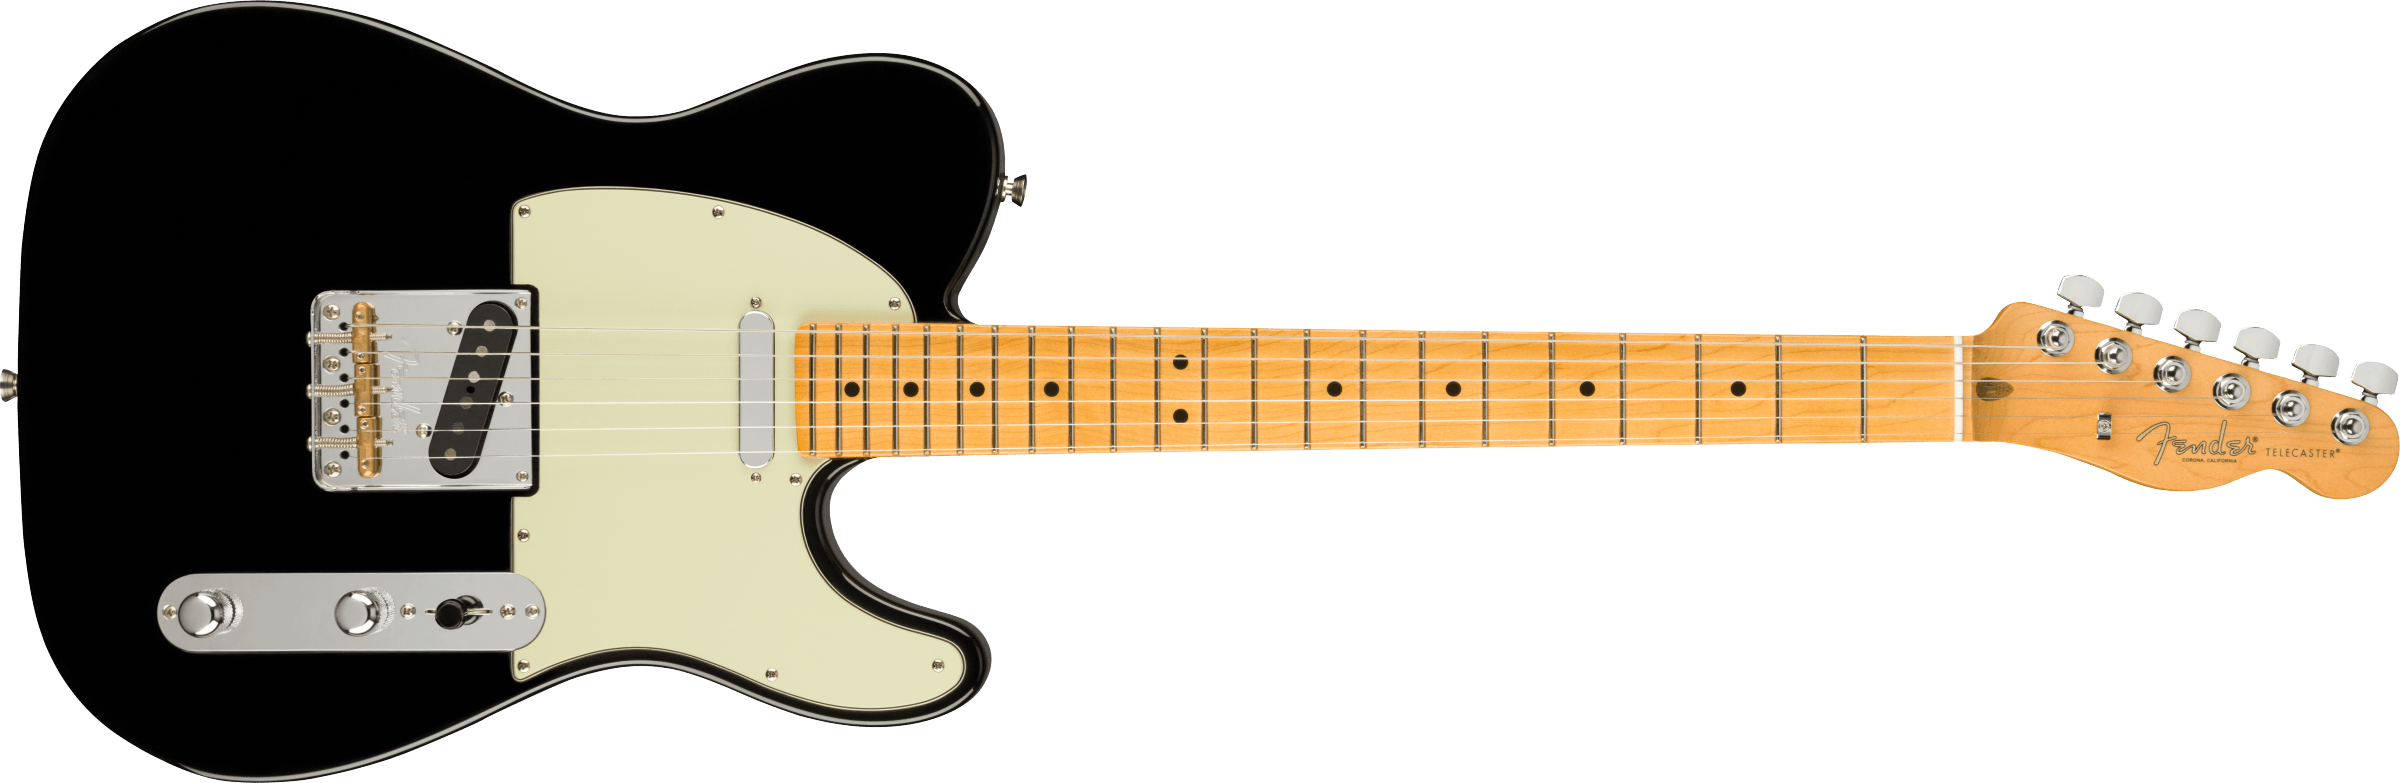 フェンダー Fender Professional Series Instrument Cable SL 15' Black ギターケーブル  ギターシールド 永遠の定番 - レコーディング、PA機材